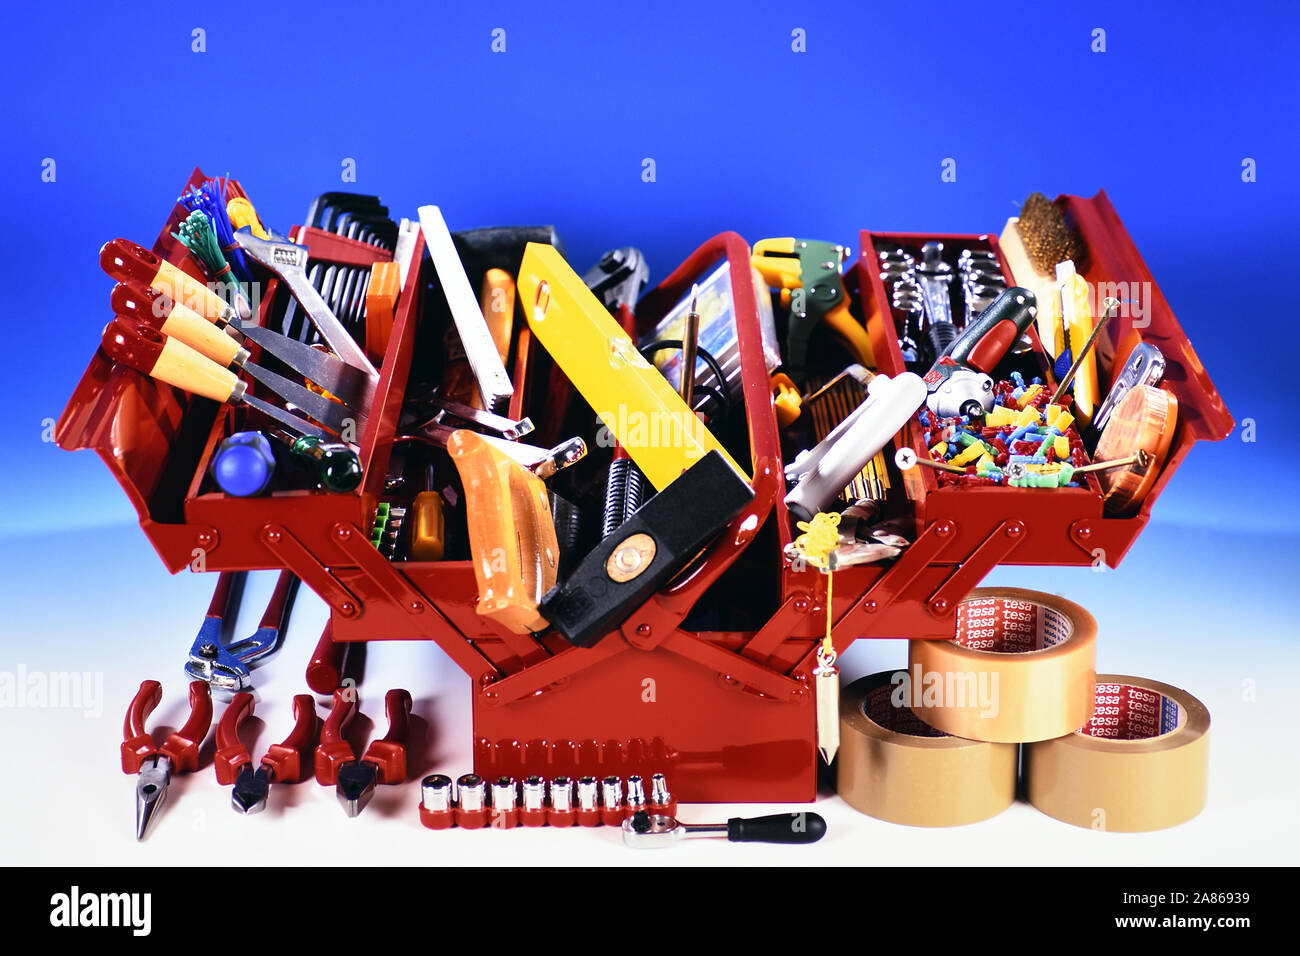 Roter Werkzeugkasten mit Werkzeug Stock Photo